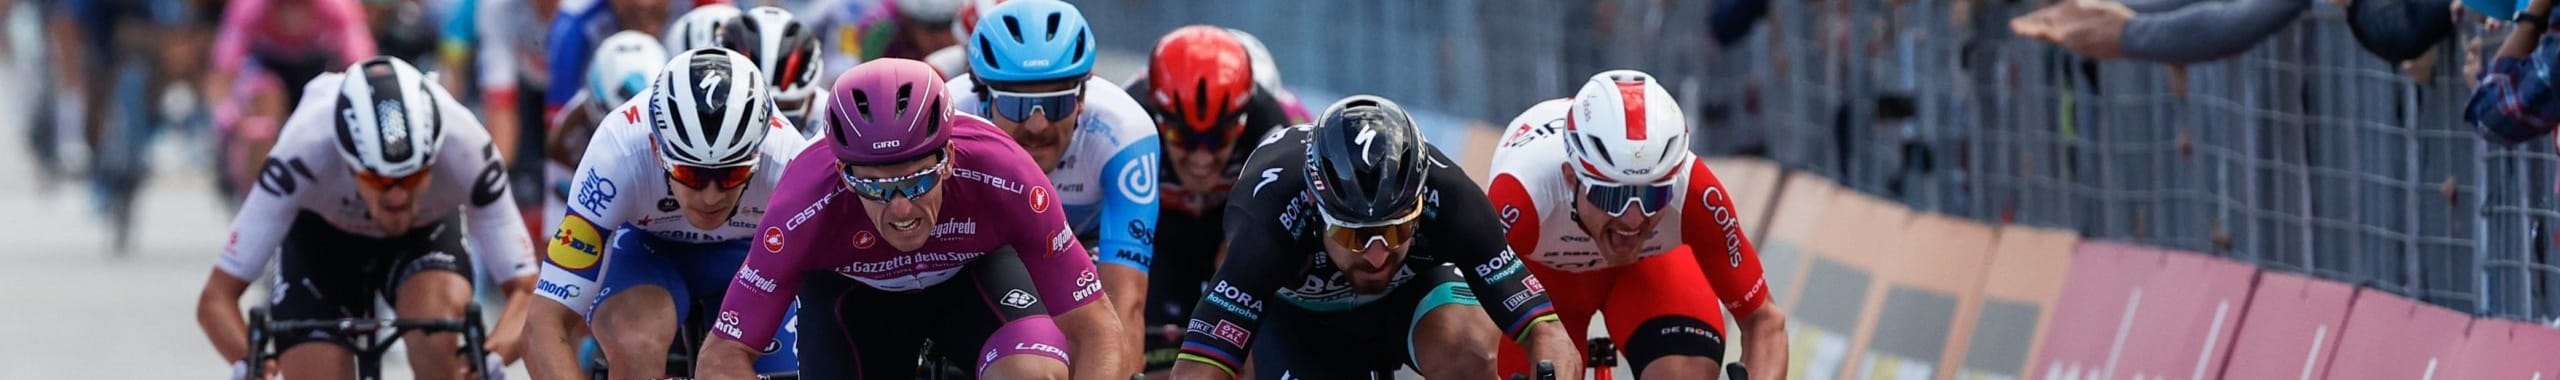 Giro d'Italia 2020, quote e favoriti per la tappa 13: avremo ancora un nuovo duello Démare-Sagan?